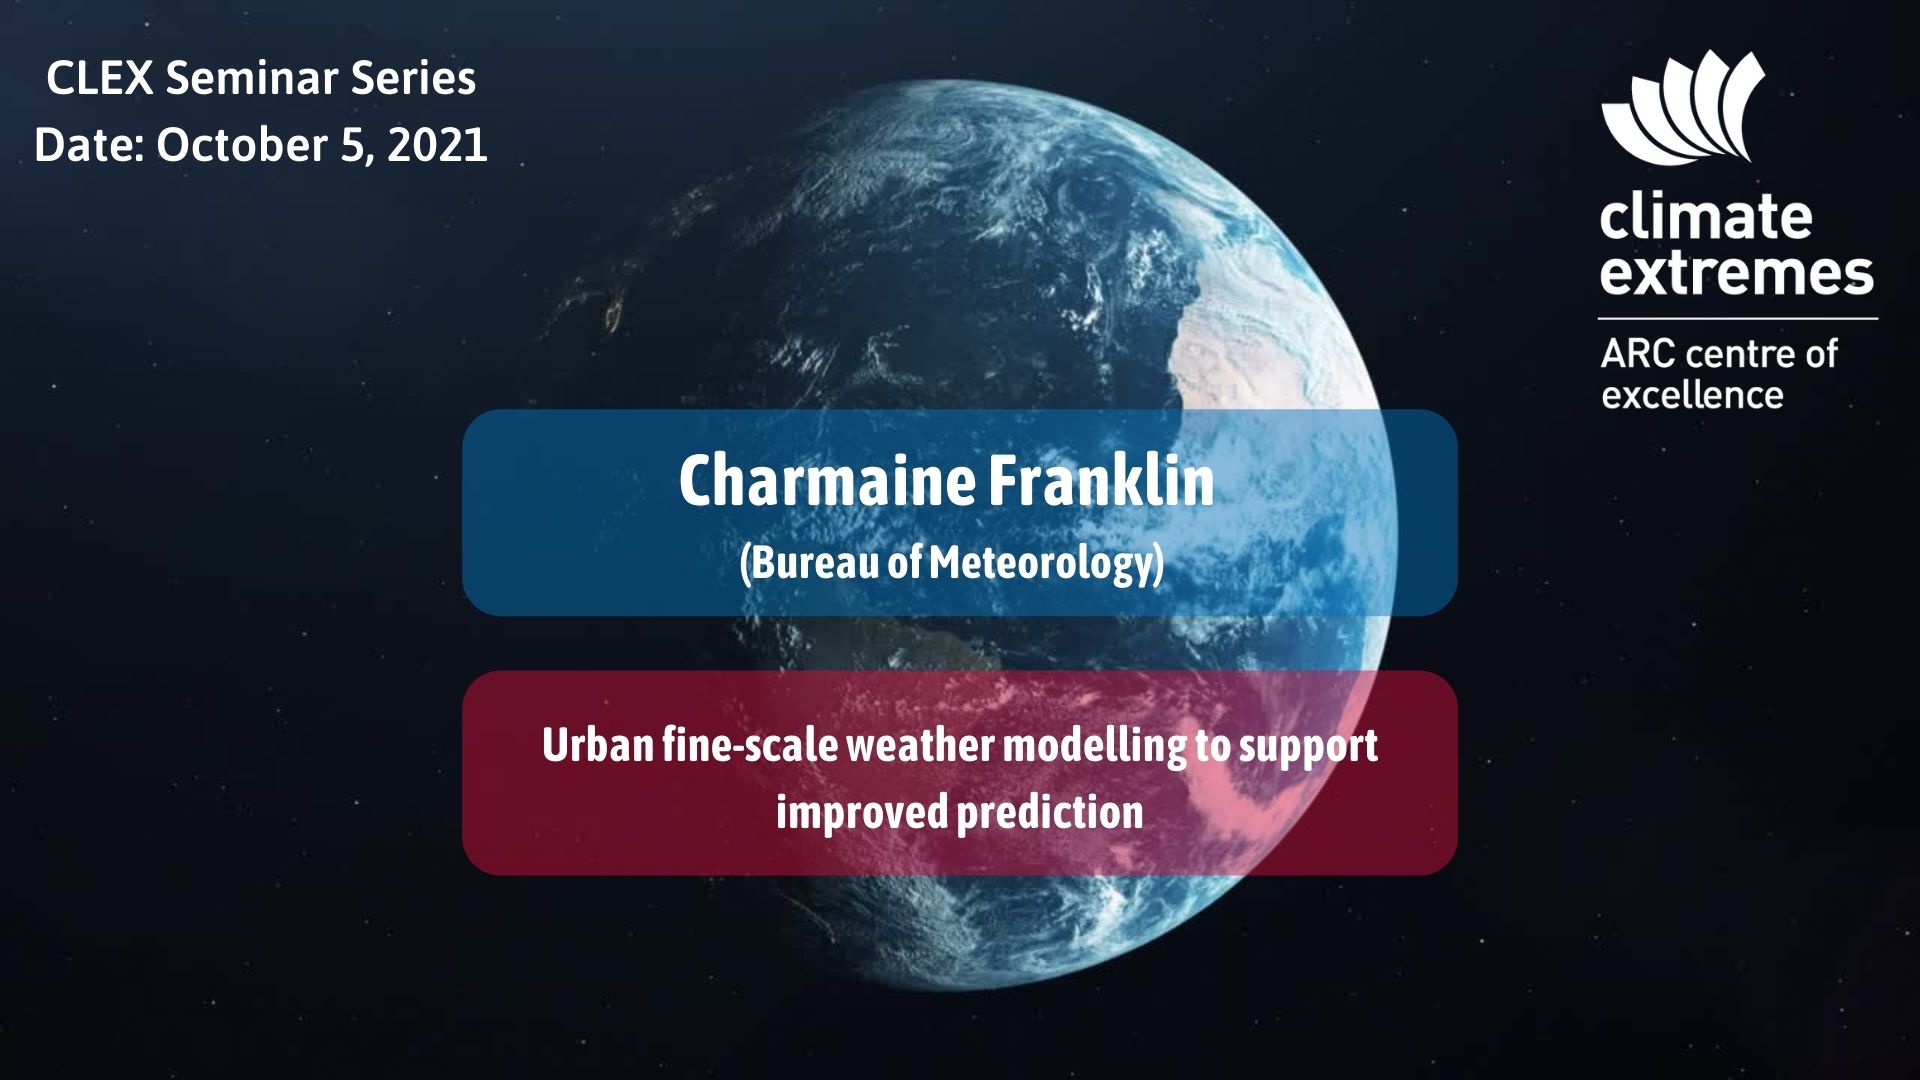 CLEX Seminar Series: Charmaine Franklin